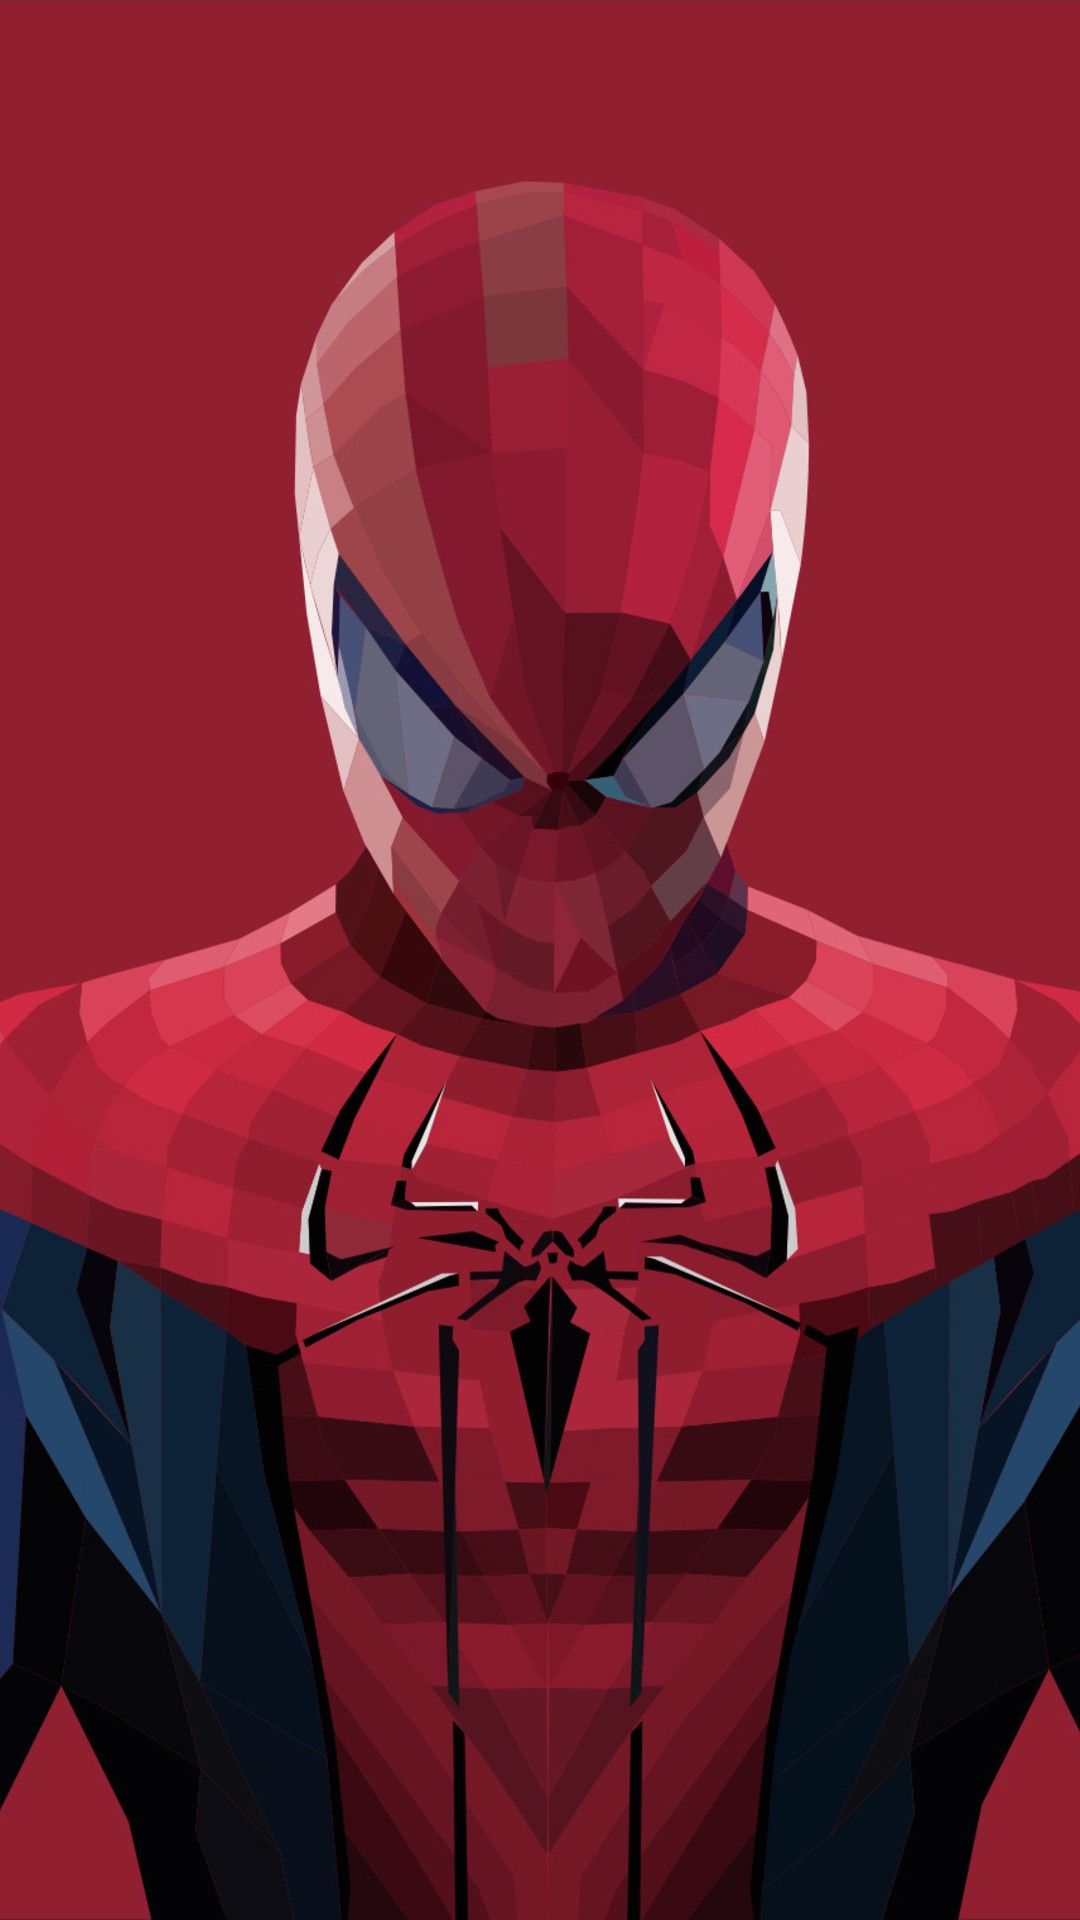 örümcek adam wallpaper,fictional character,superhero,batman,suit actor,hero